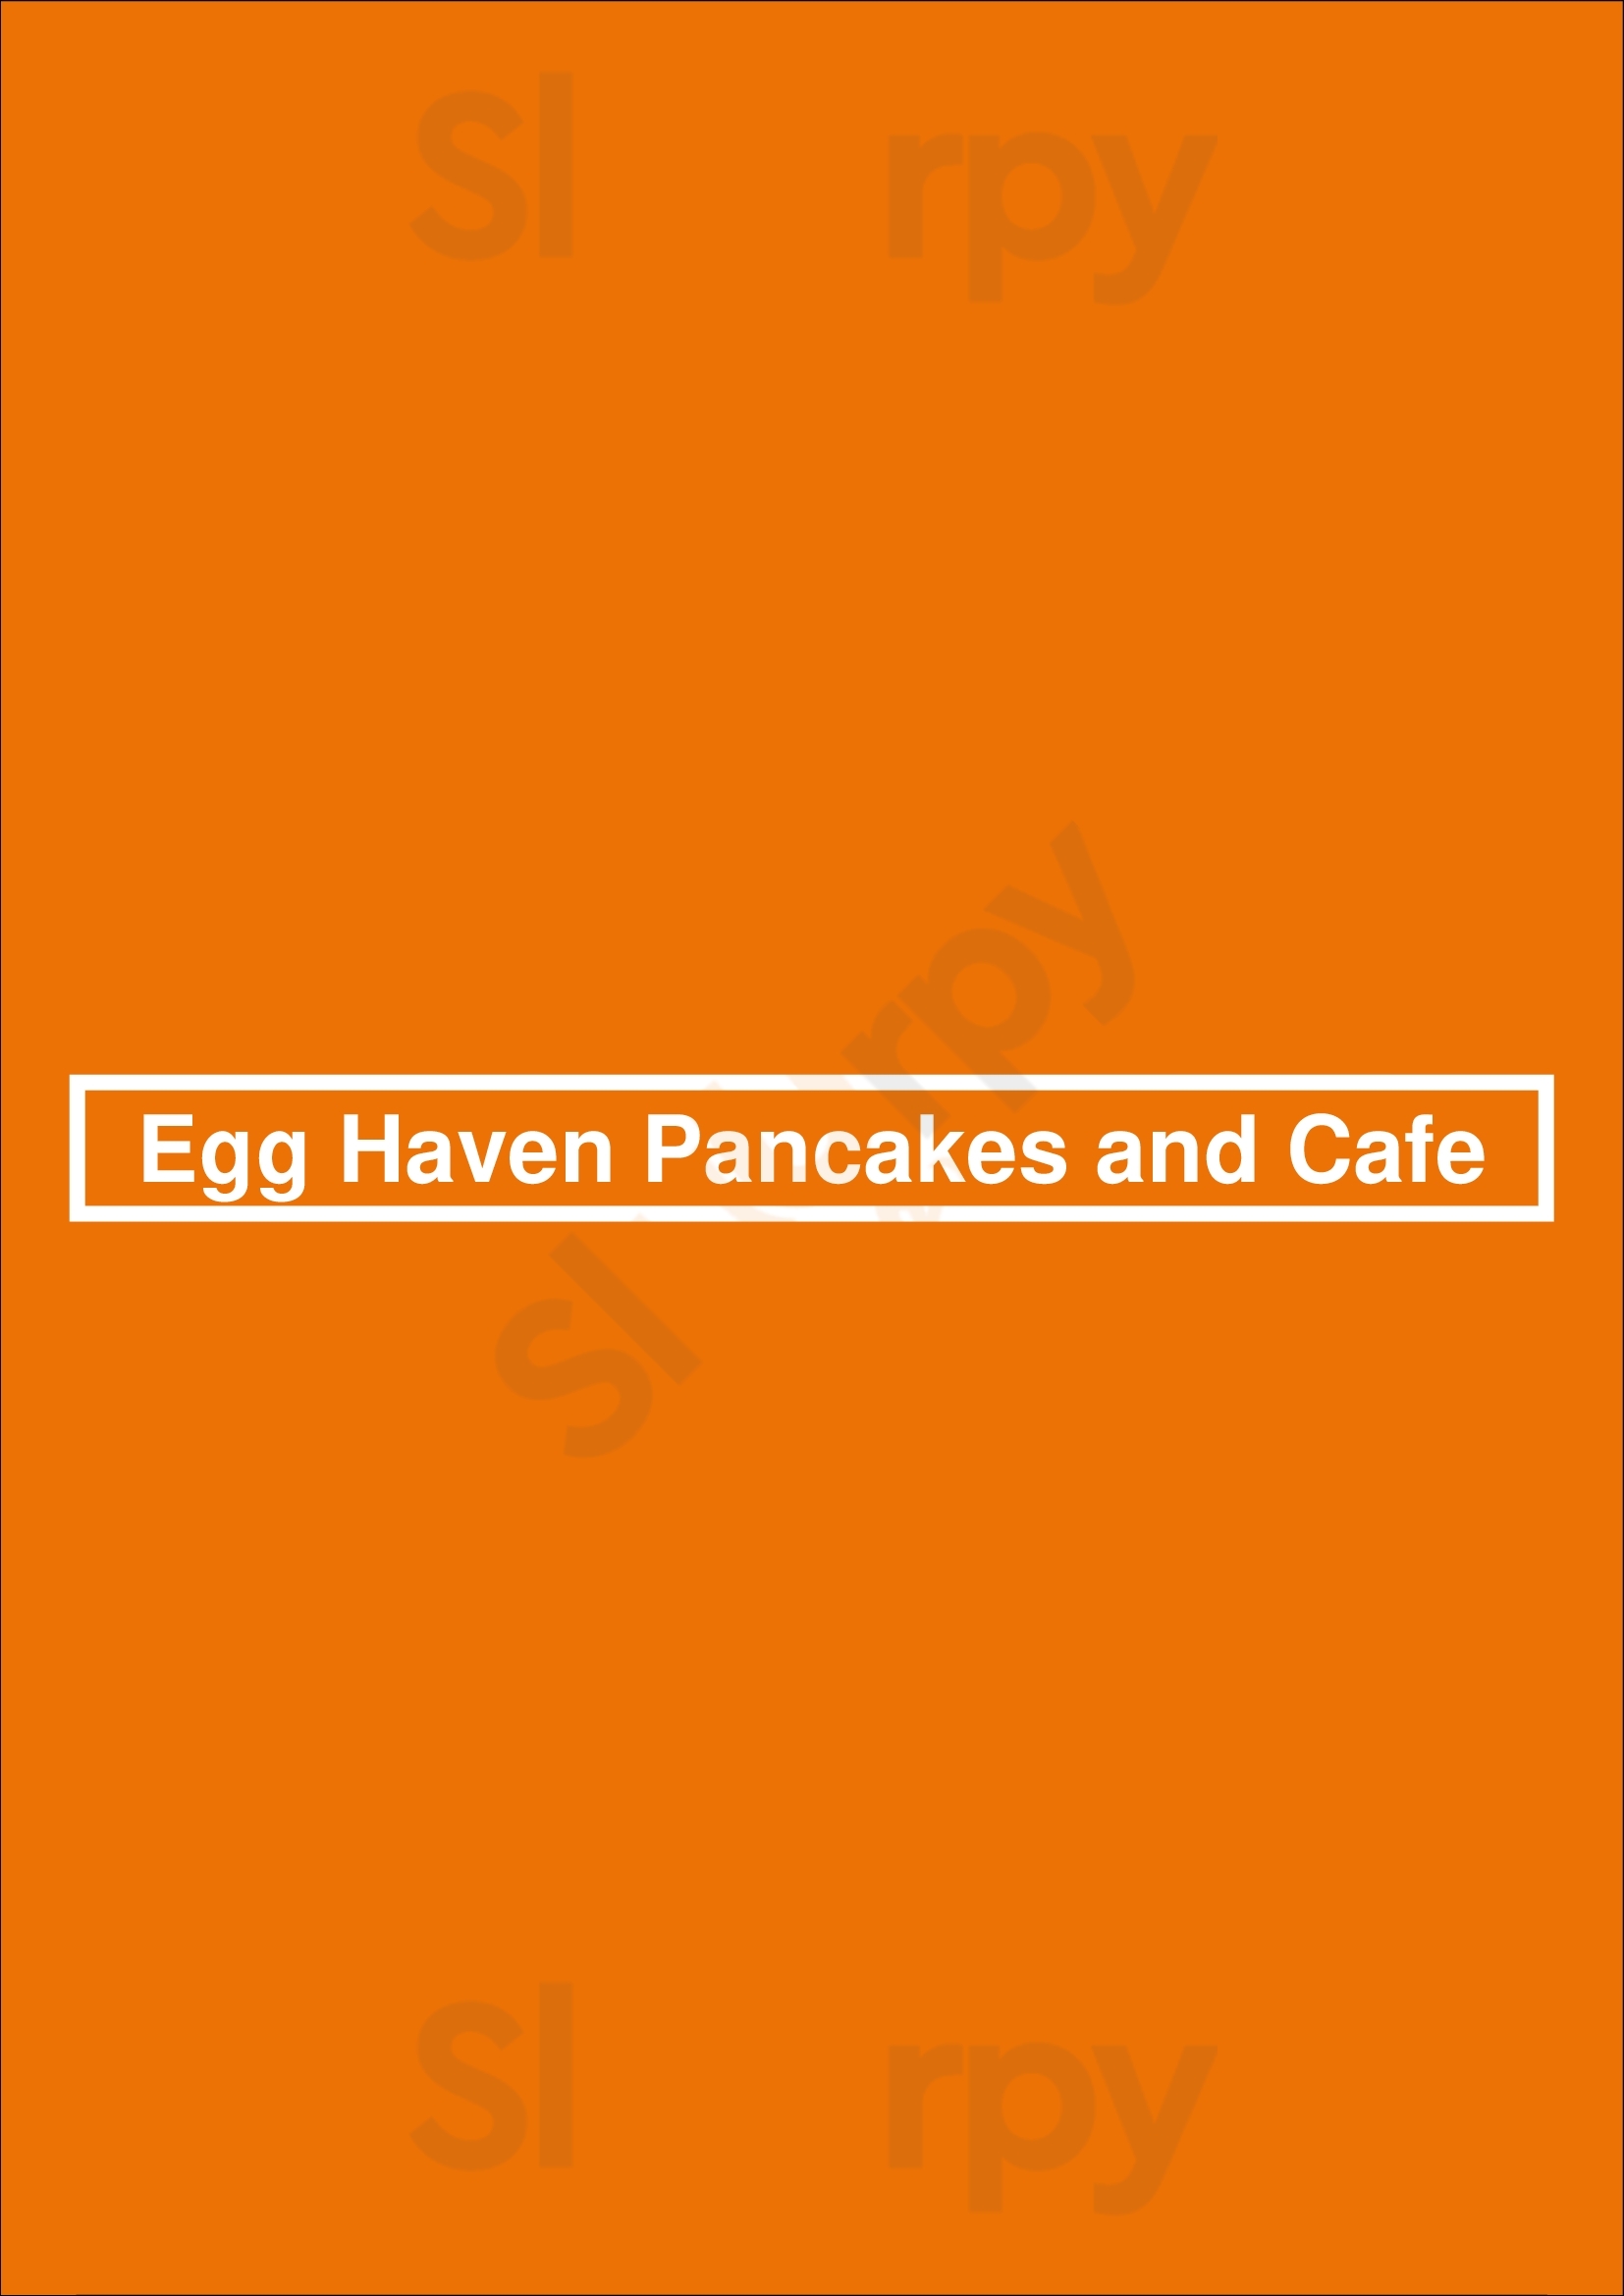 Egg Haven Pancakes And Cafe Dekalb DeKalb Menu - 1